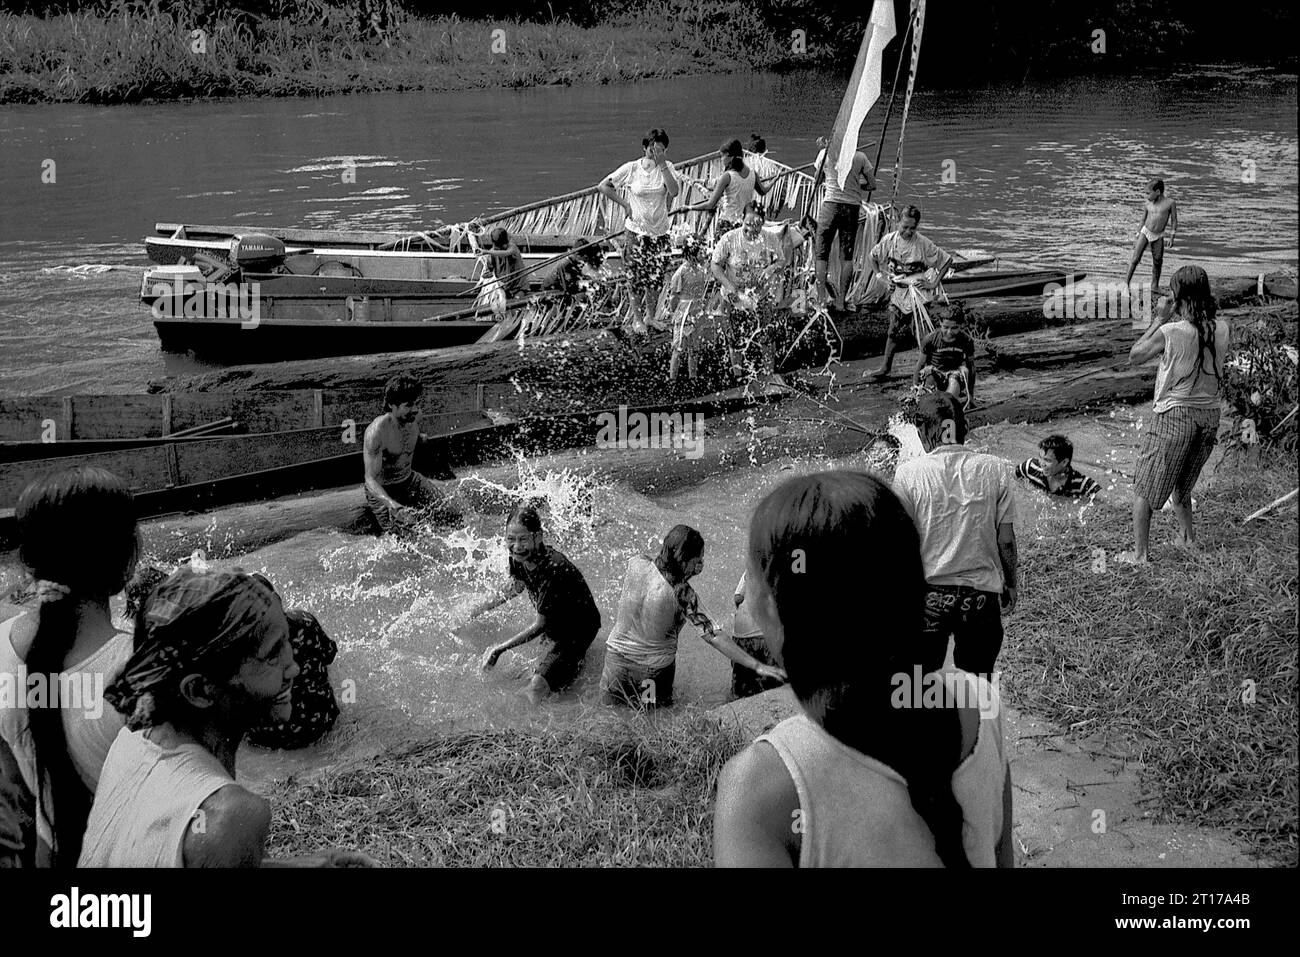 Kalimantan occidental, Indonésie. Mars 2007. Les gens s'éclaboussent d'eau, un acte purifiant, comme un bateau transportant la famille du nouveau chef traditionnel de la communauté de maison longue Dayak Tamambaloh arrive, après une visite à un cimetière voisin où l'ancien chef est enterré, dans le village de Sungai Uluk Palin (Sungulo Palin), Putusibau Utara, Kapuas Hulu, West Kalimantan, Indonésie. la communauté indigène vit dans la plus longue maison longue de Kalimantan, et organise des événements traditionnels en l'honneur de l'ancien chef. plus tard en septembre 2014, leur maison longue a été incendiée par un accident, sans... Banque D'Images